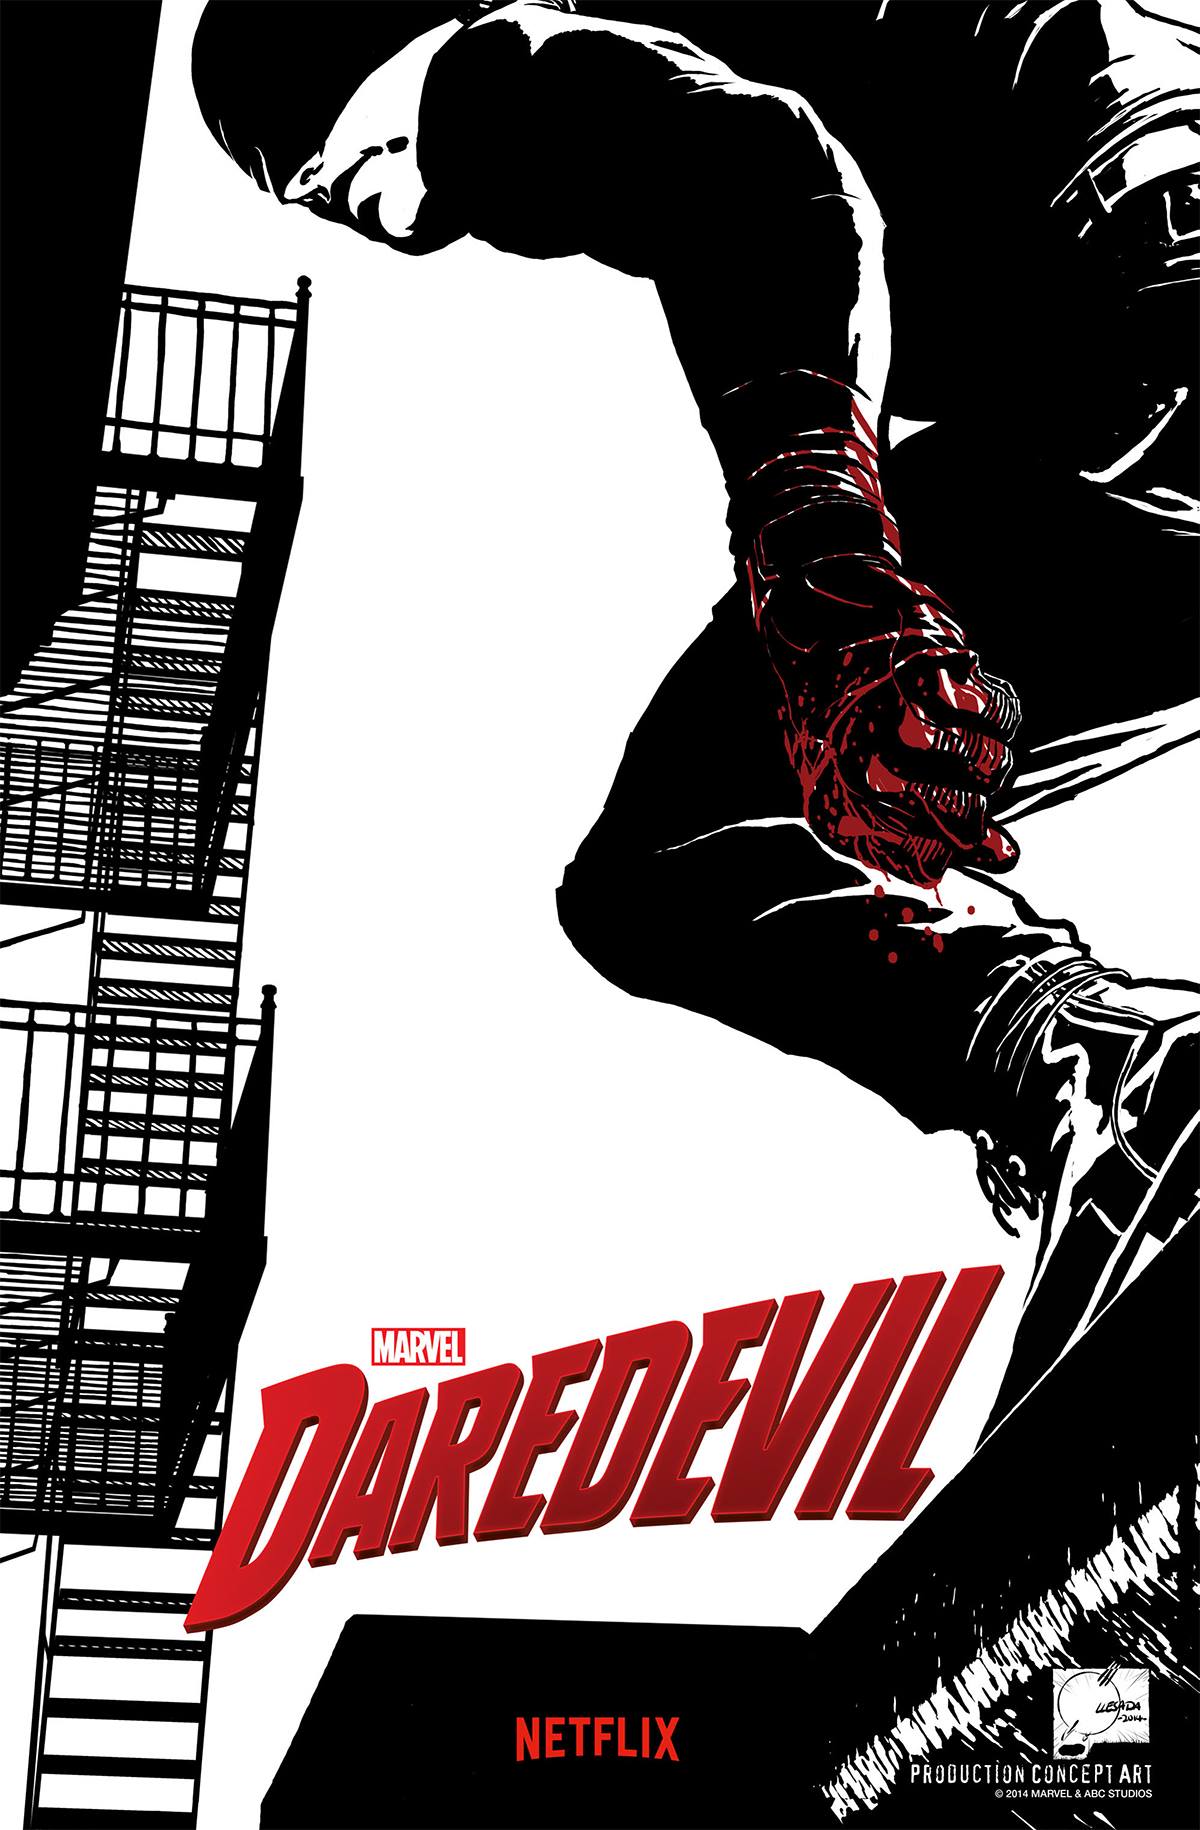 Marvel's Daredevil Concept Art